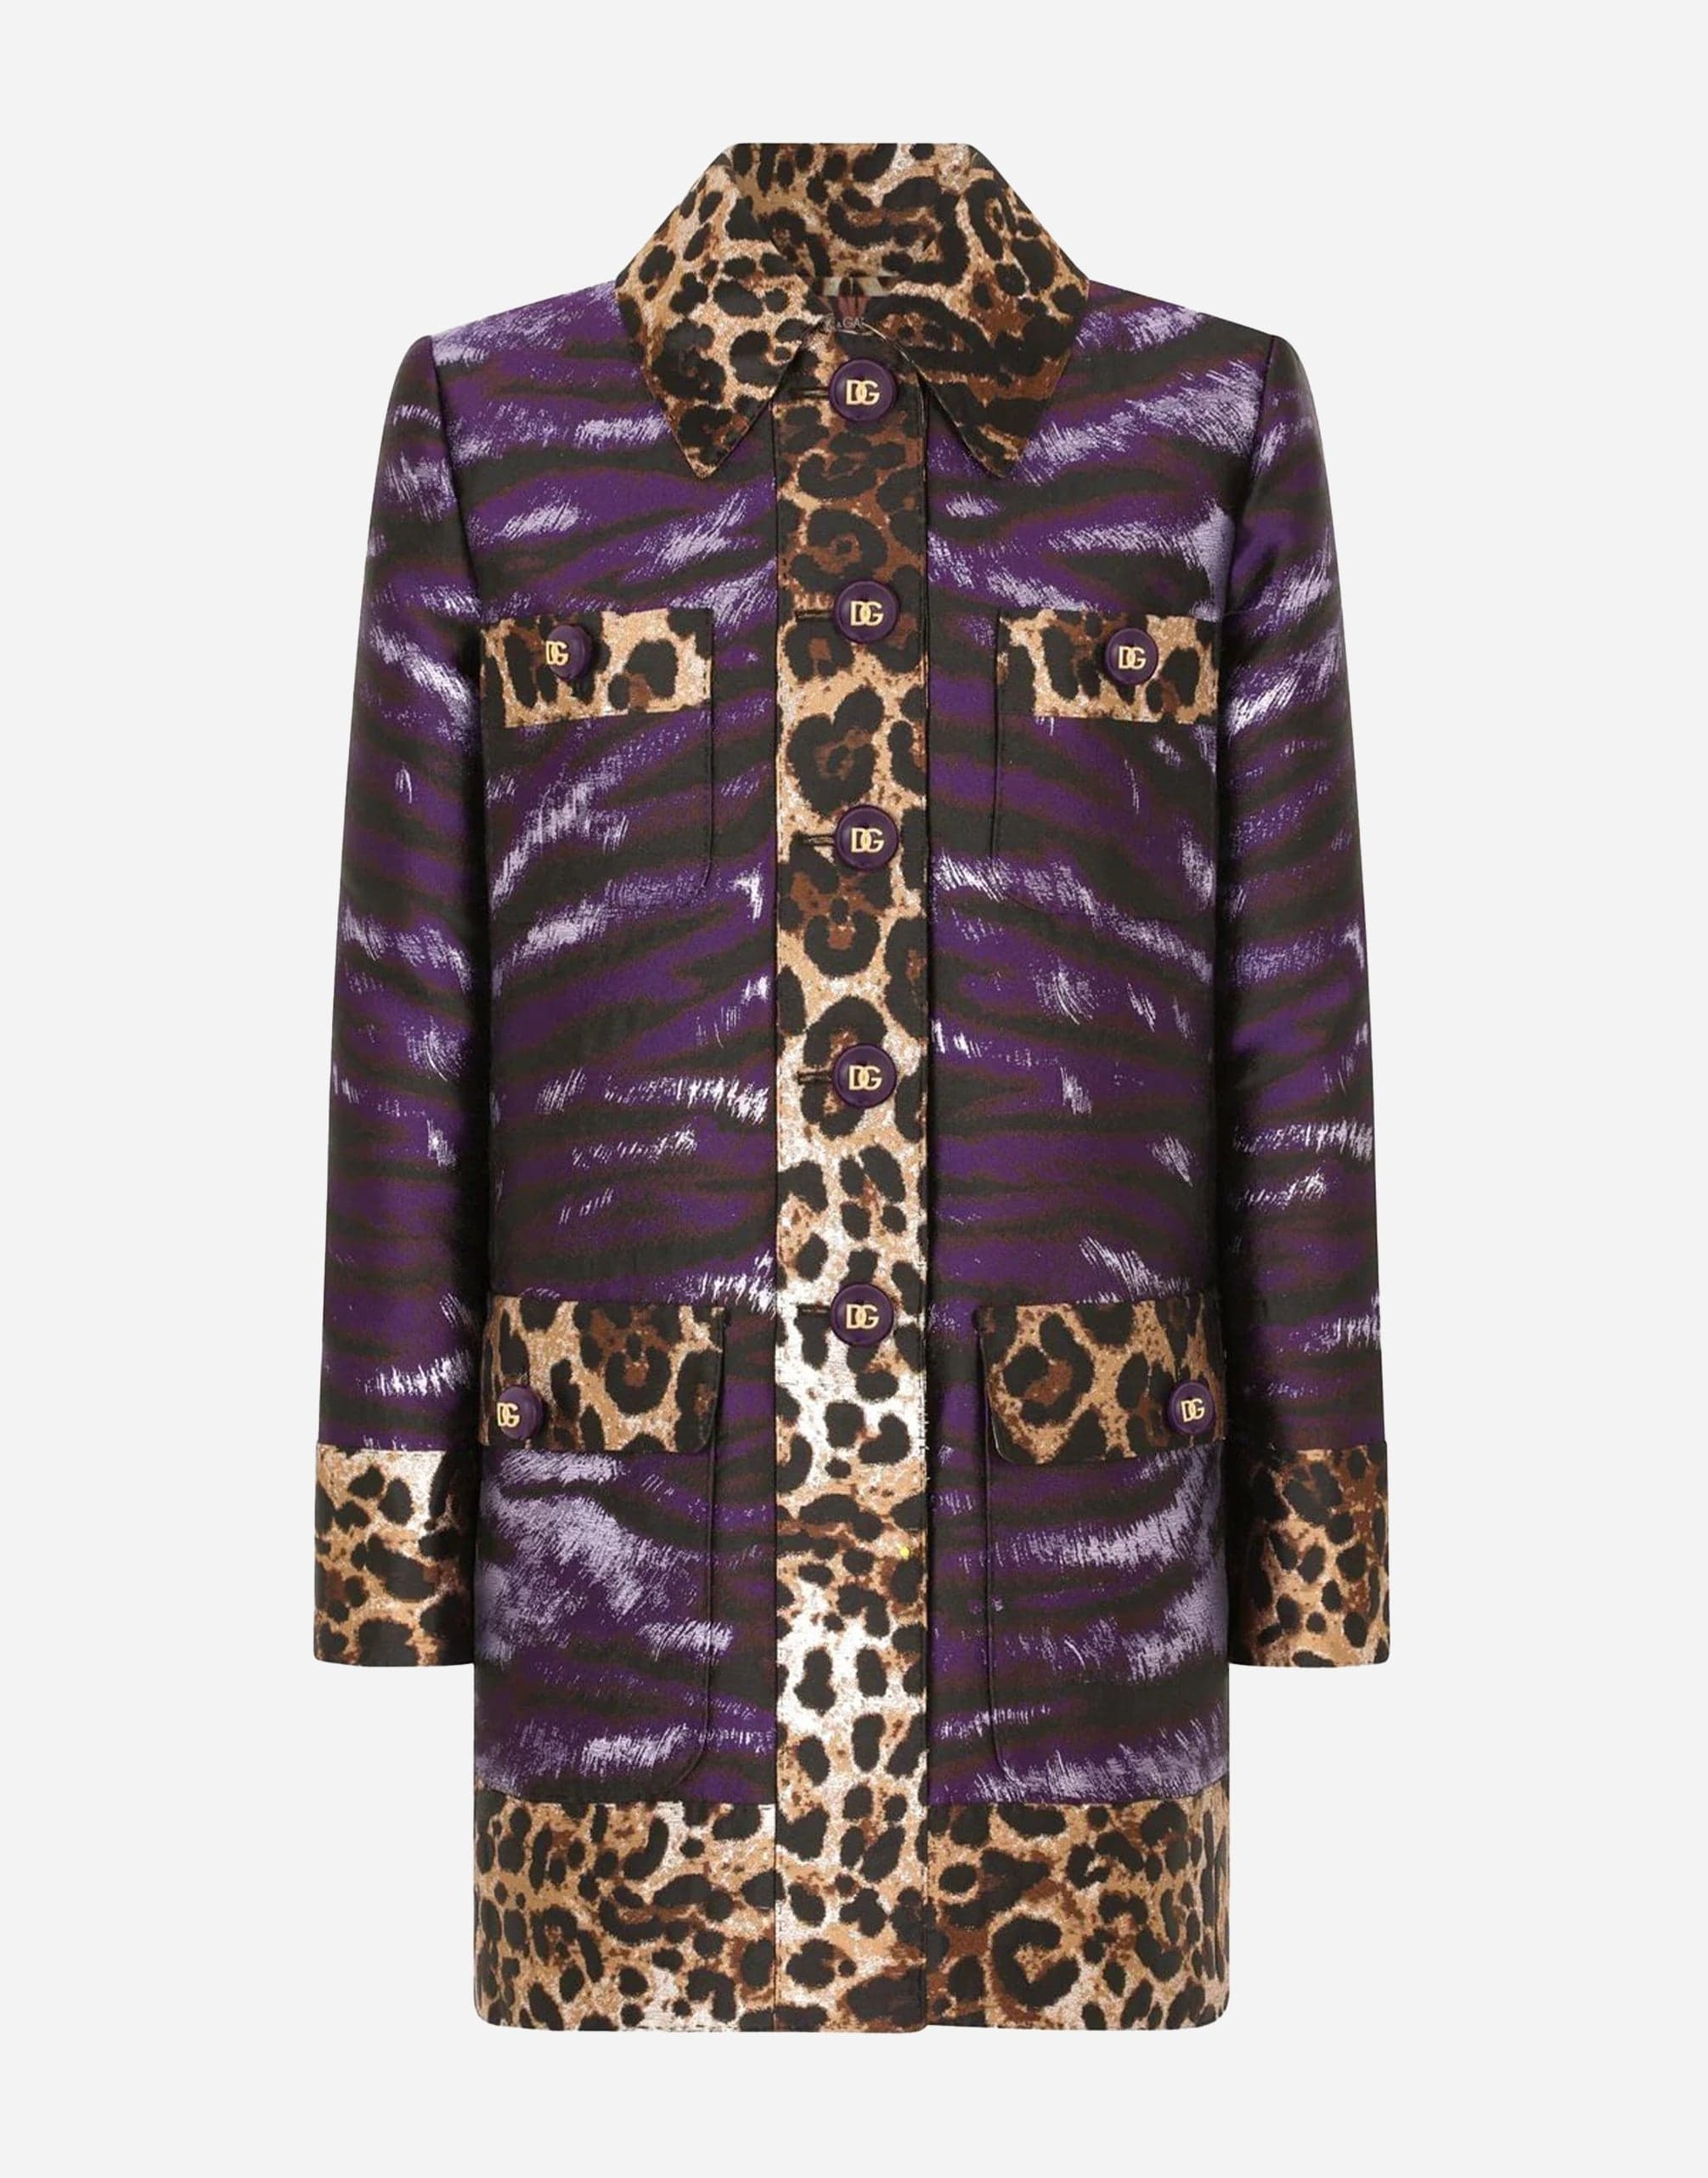 Lamé Jacquard Jacket With Tiger Print